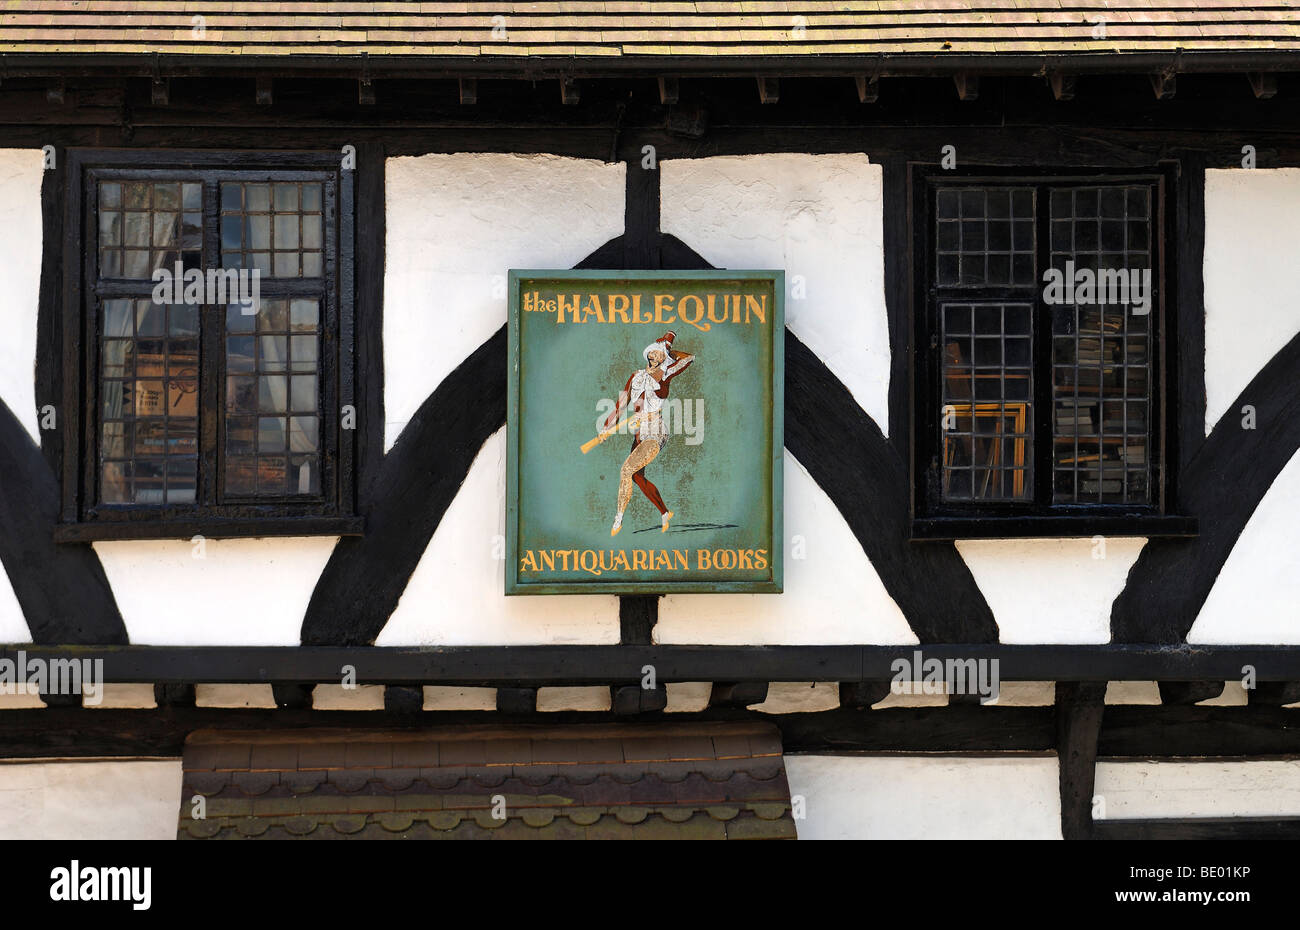 Los anunciantes signo de una Librería Anticuaria en una vieja casa de entramado de madera, una colina empinada, Lincoln, Lincolnshire, Inglaterra, Reino Unido, EUR Foto de stock